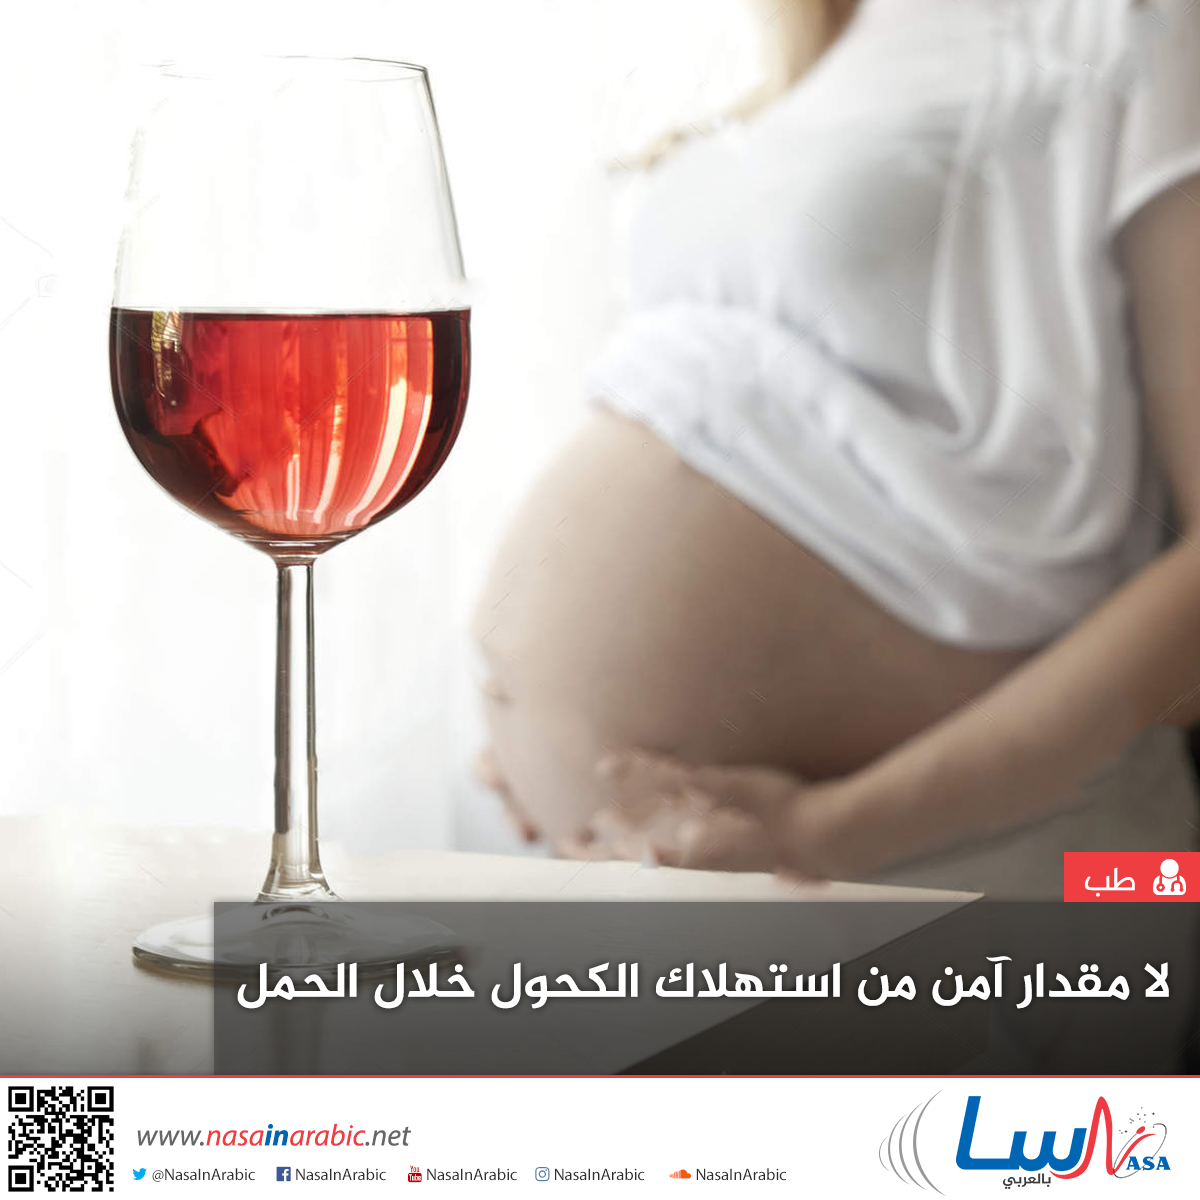 لا مقدار آمن من استهلاك الكحول خلال الحمل